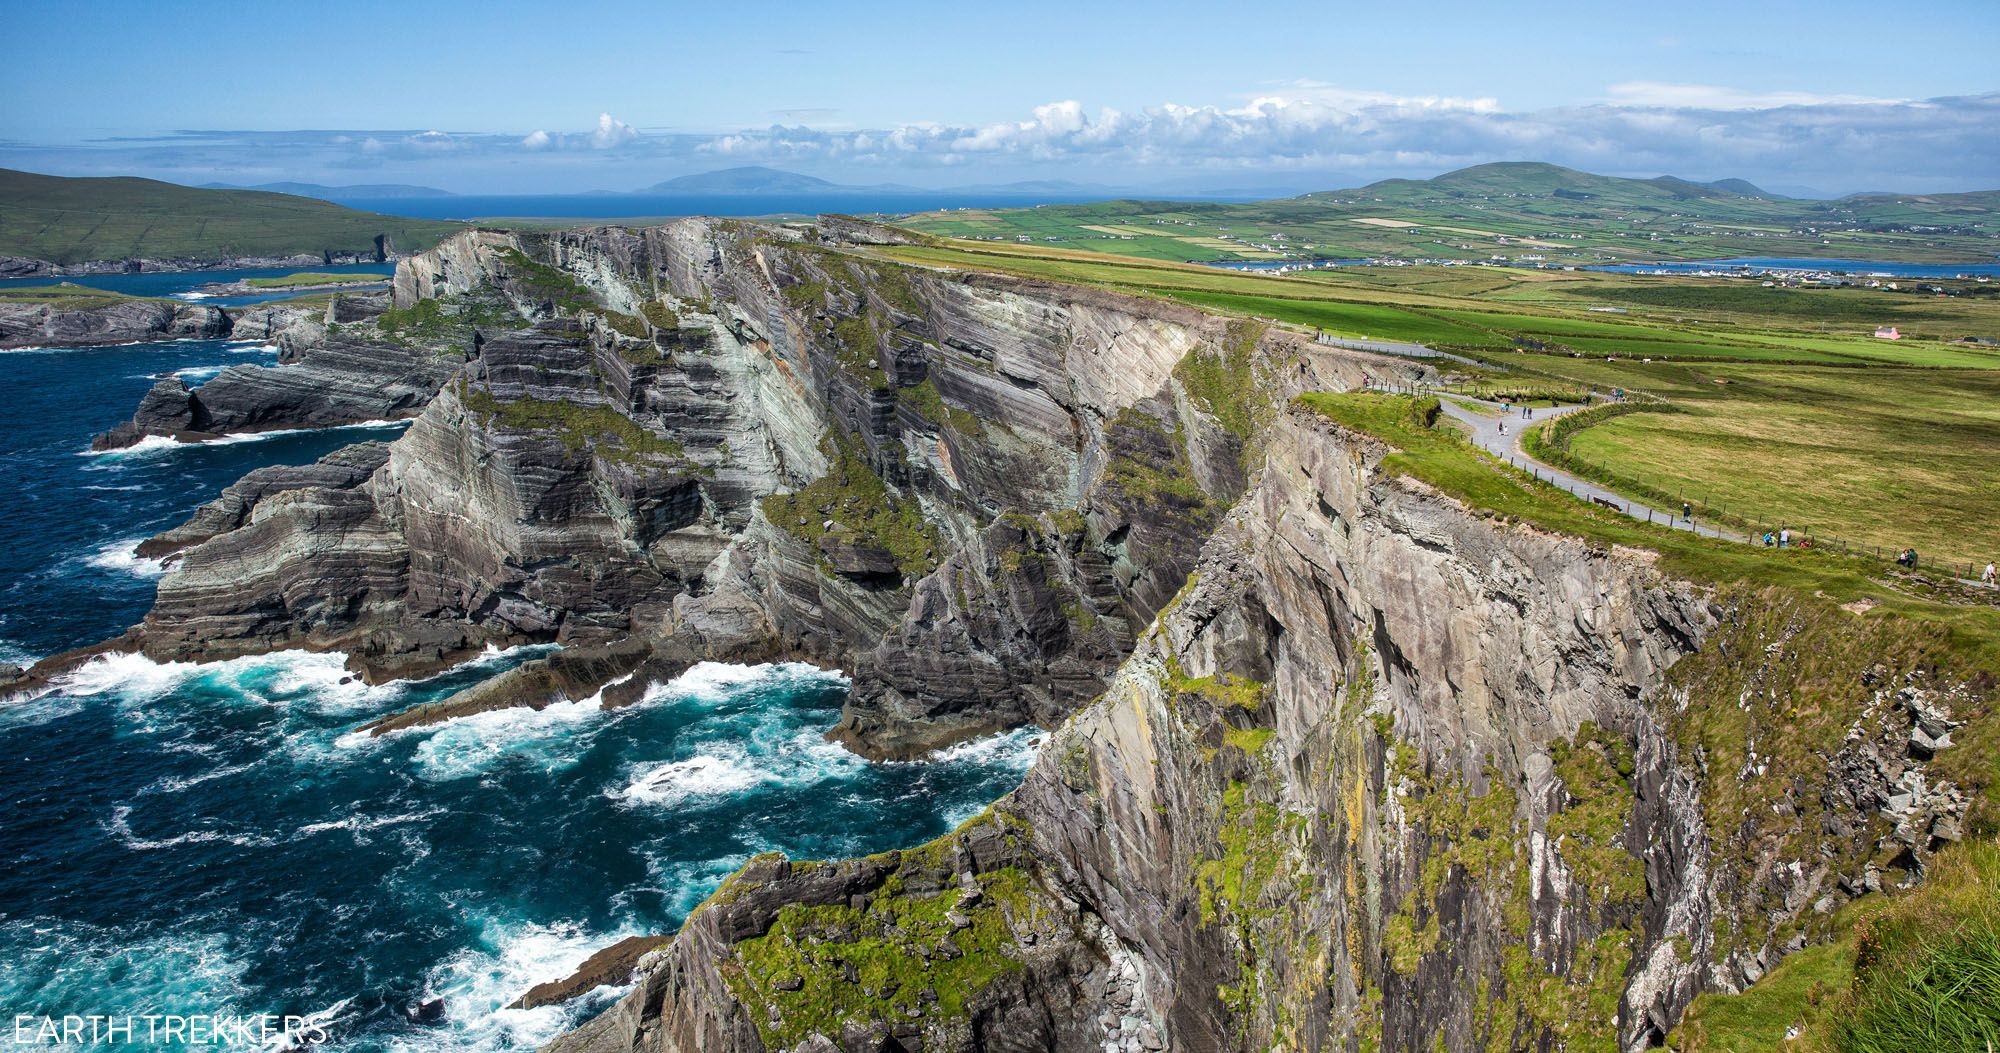 Graan Uitscheiden Cirkel Tips for Driving the Ring of Kerry, Ireland – Earth Trekkers